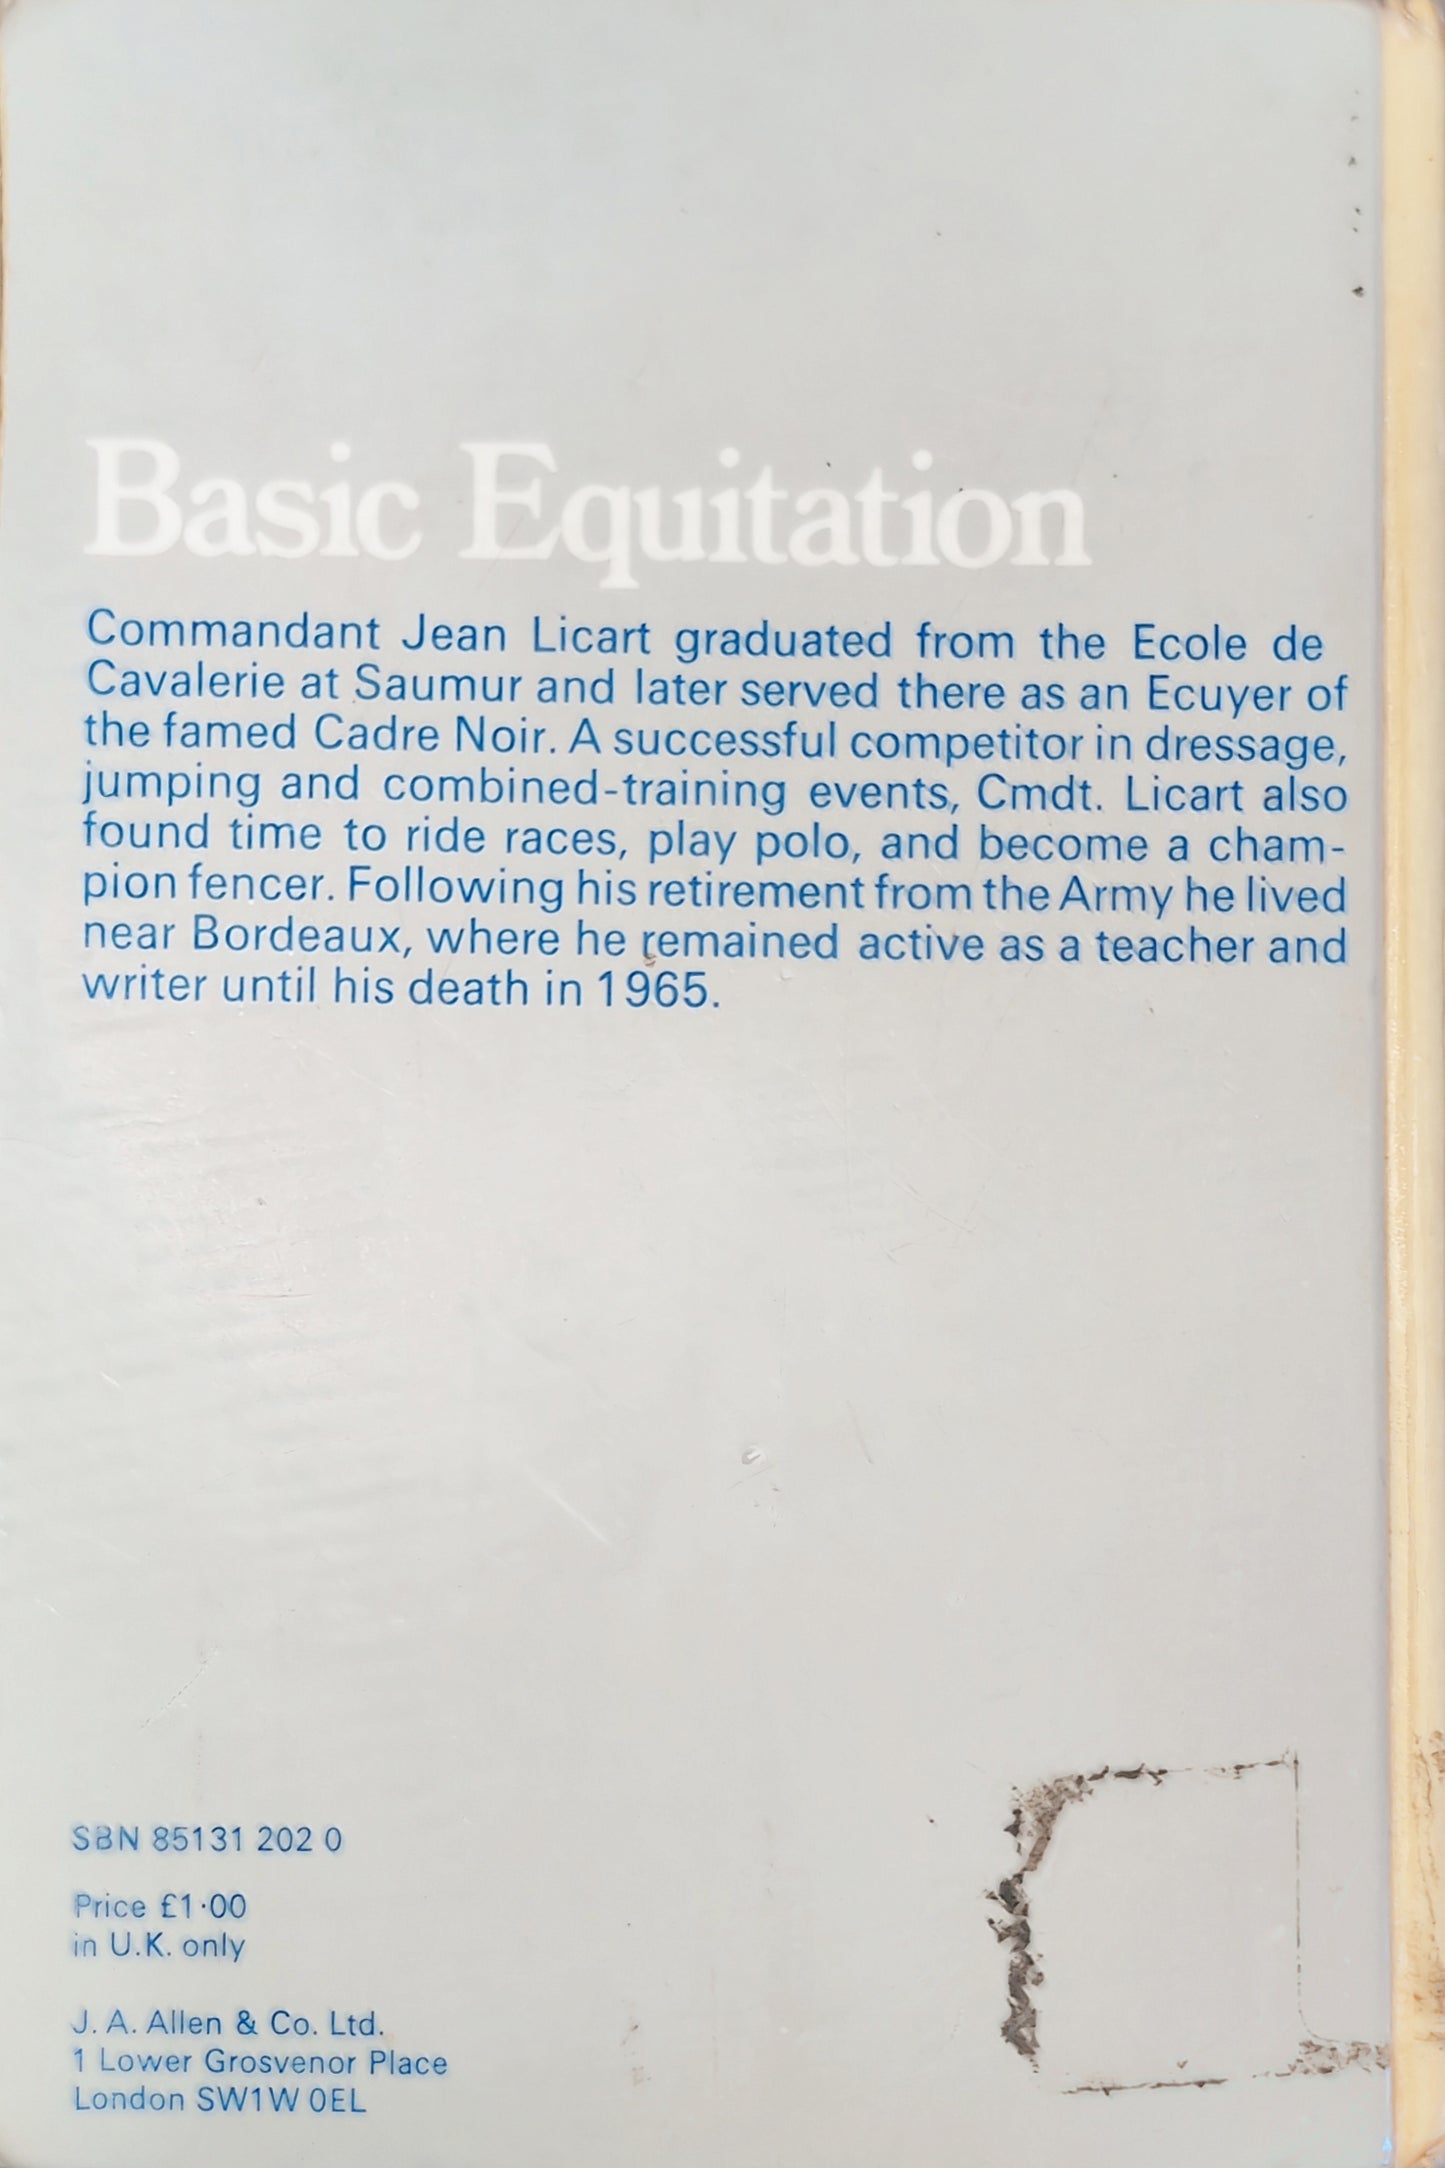 Basic Equitation